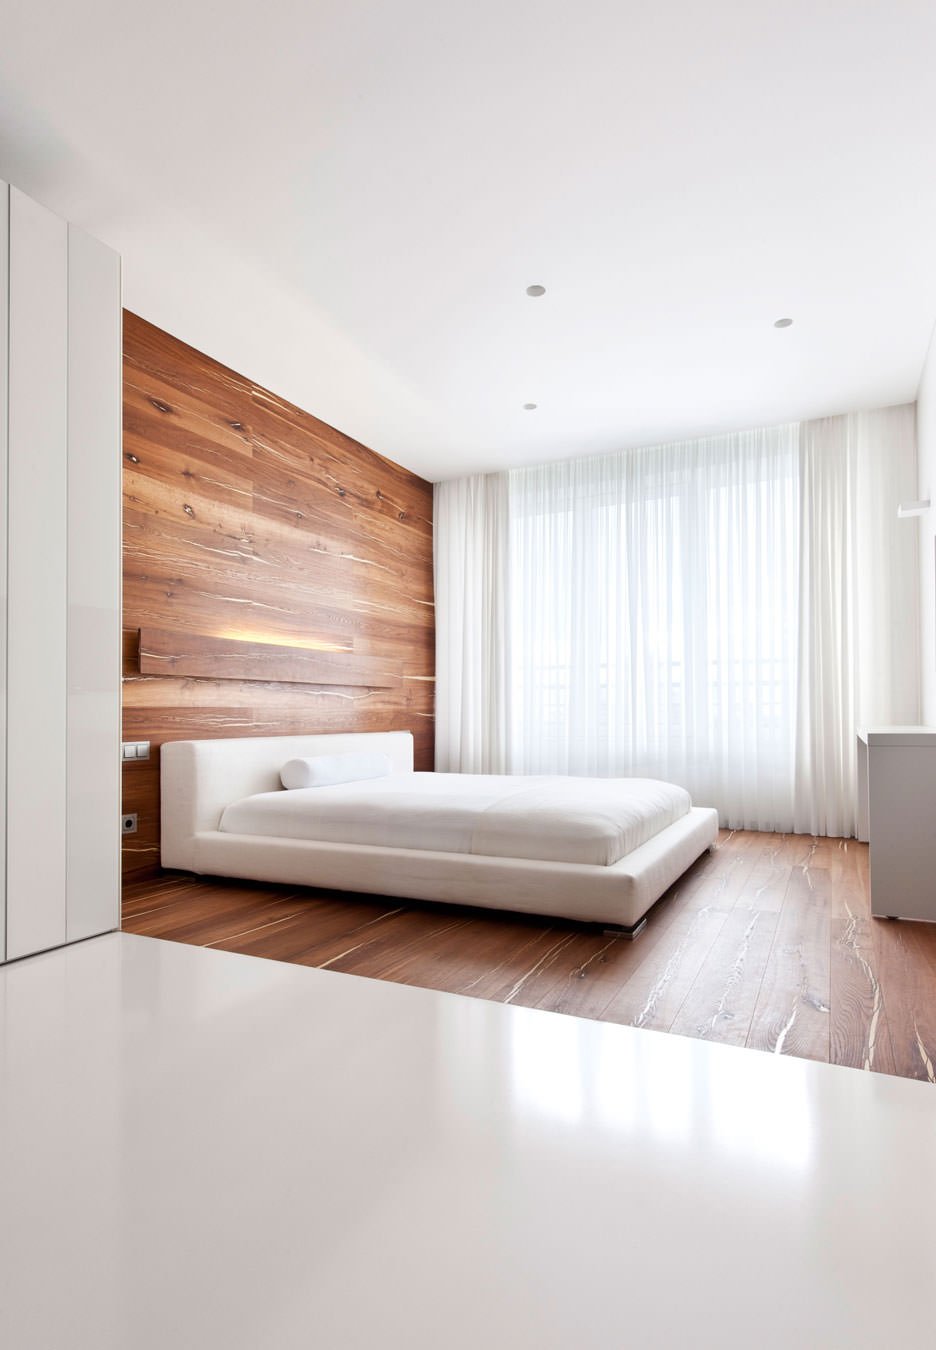 Il pavimento si prolunga su una porzione di parete differenziando la zona letto dal resto dell’ambiente. Stile moderno minimal - colore bianco in contrasto con il legno